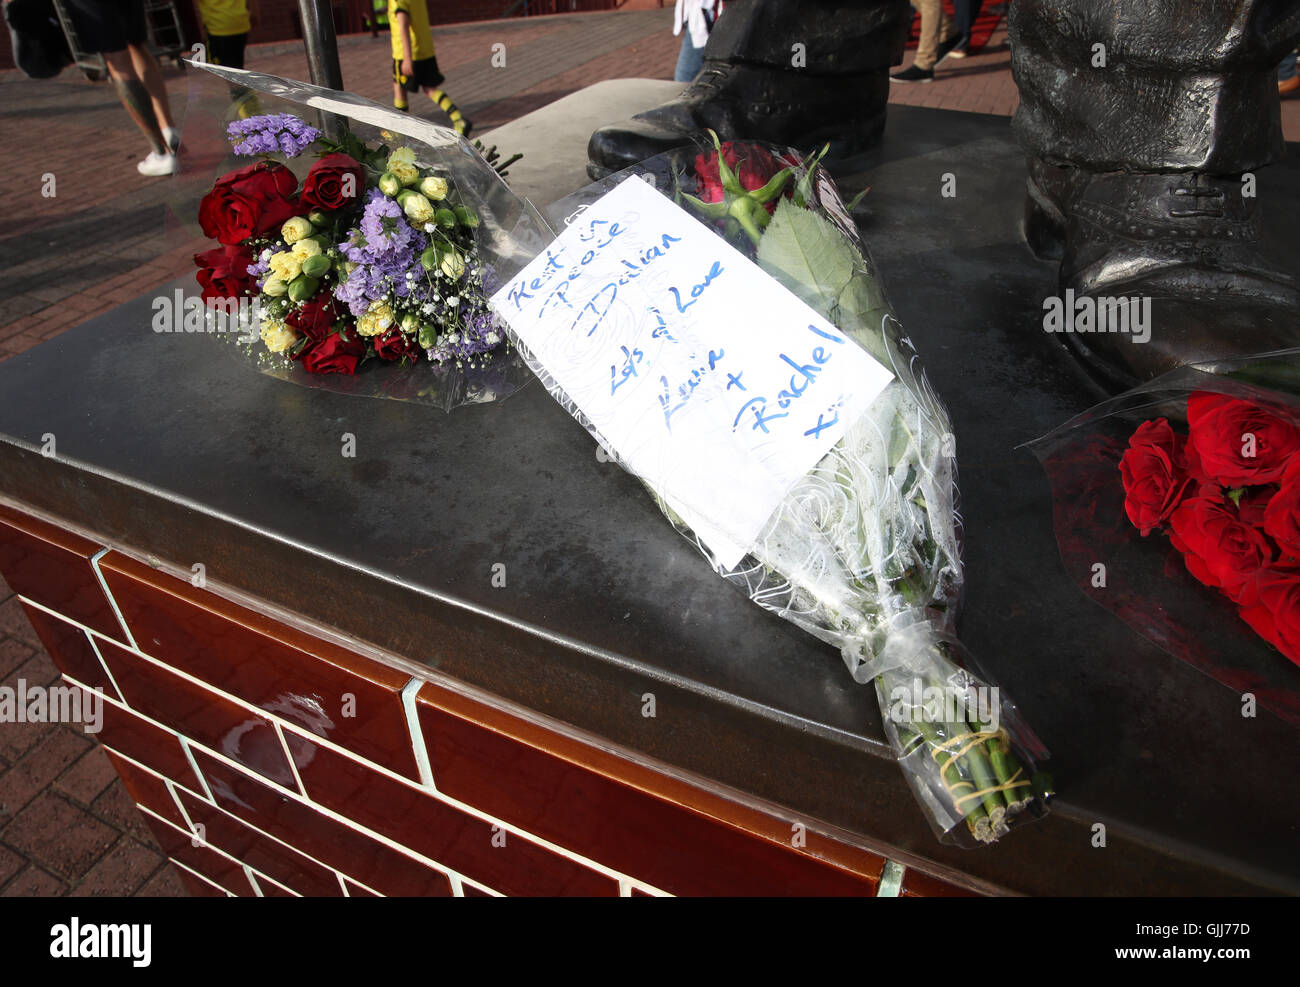 Blumen im Speicher der ehemaligen Villa Spieler Dalian Atkinson, der gestern gestorben, bevor der Himmel Bet Meisterschaftsspiel im Villa Park, Birmingham. Stockfoto